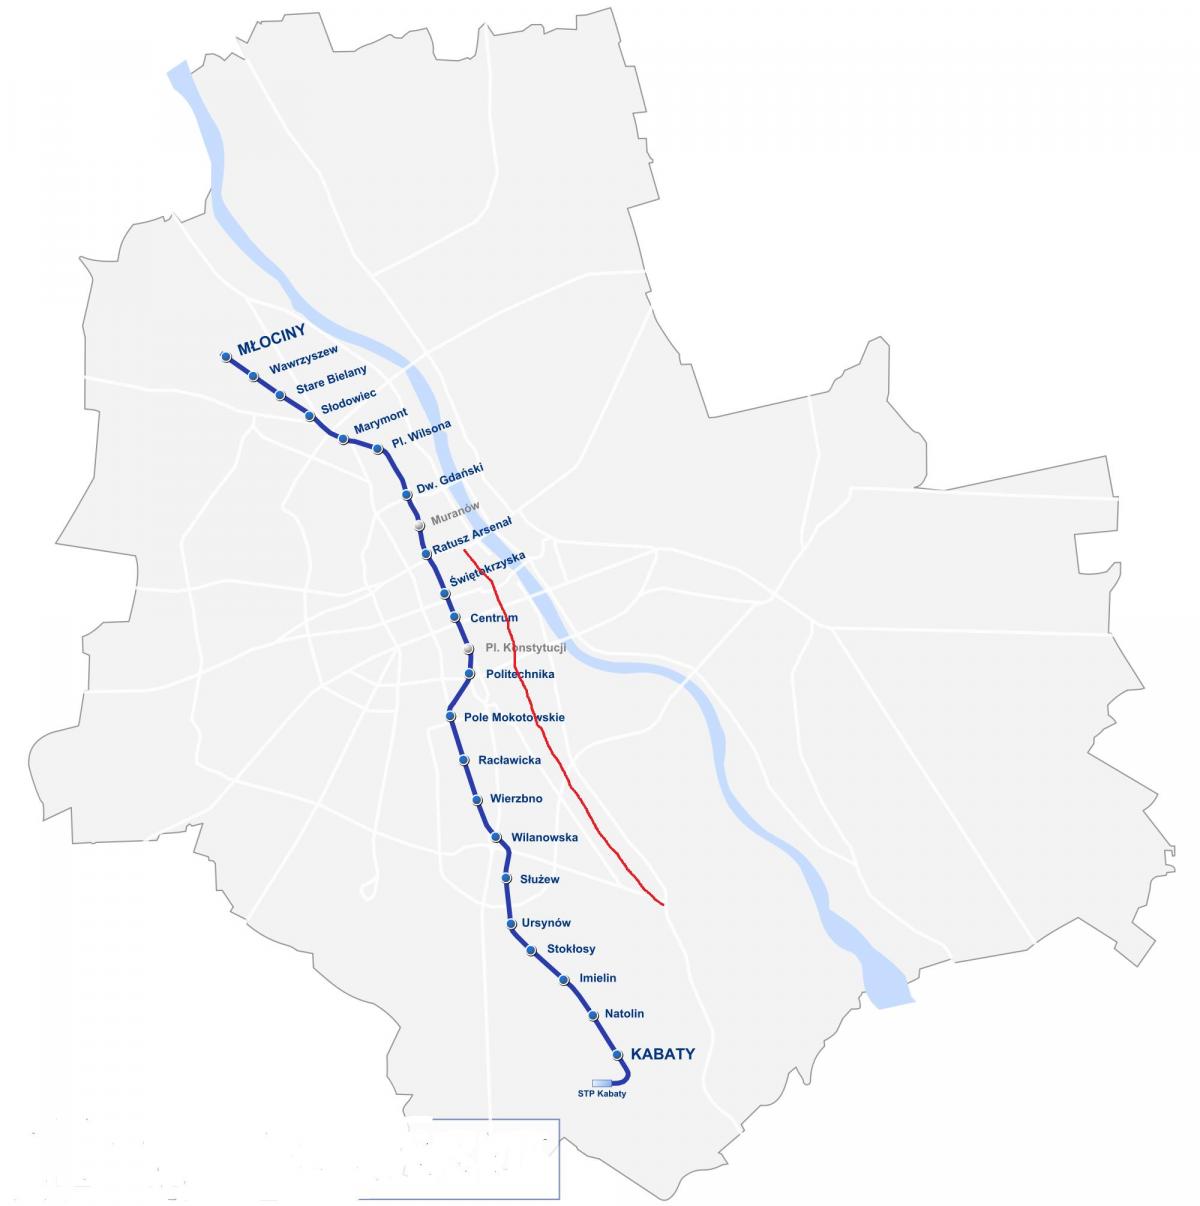 Mapa de Varsovia real ruta 